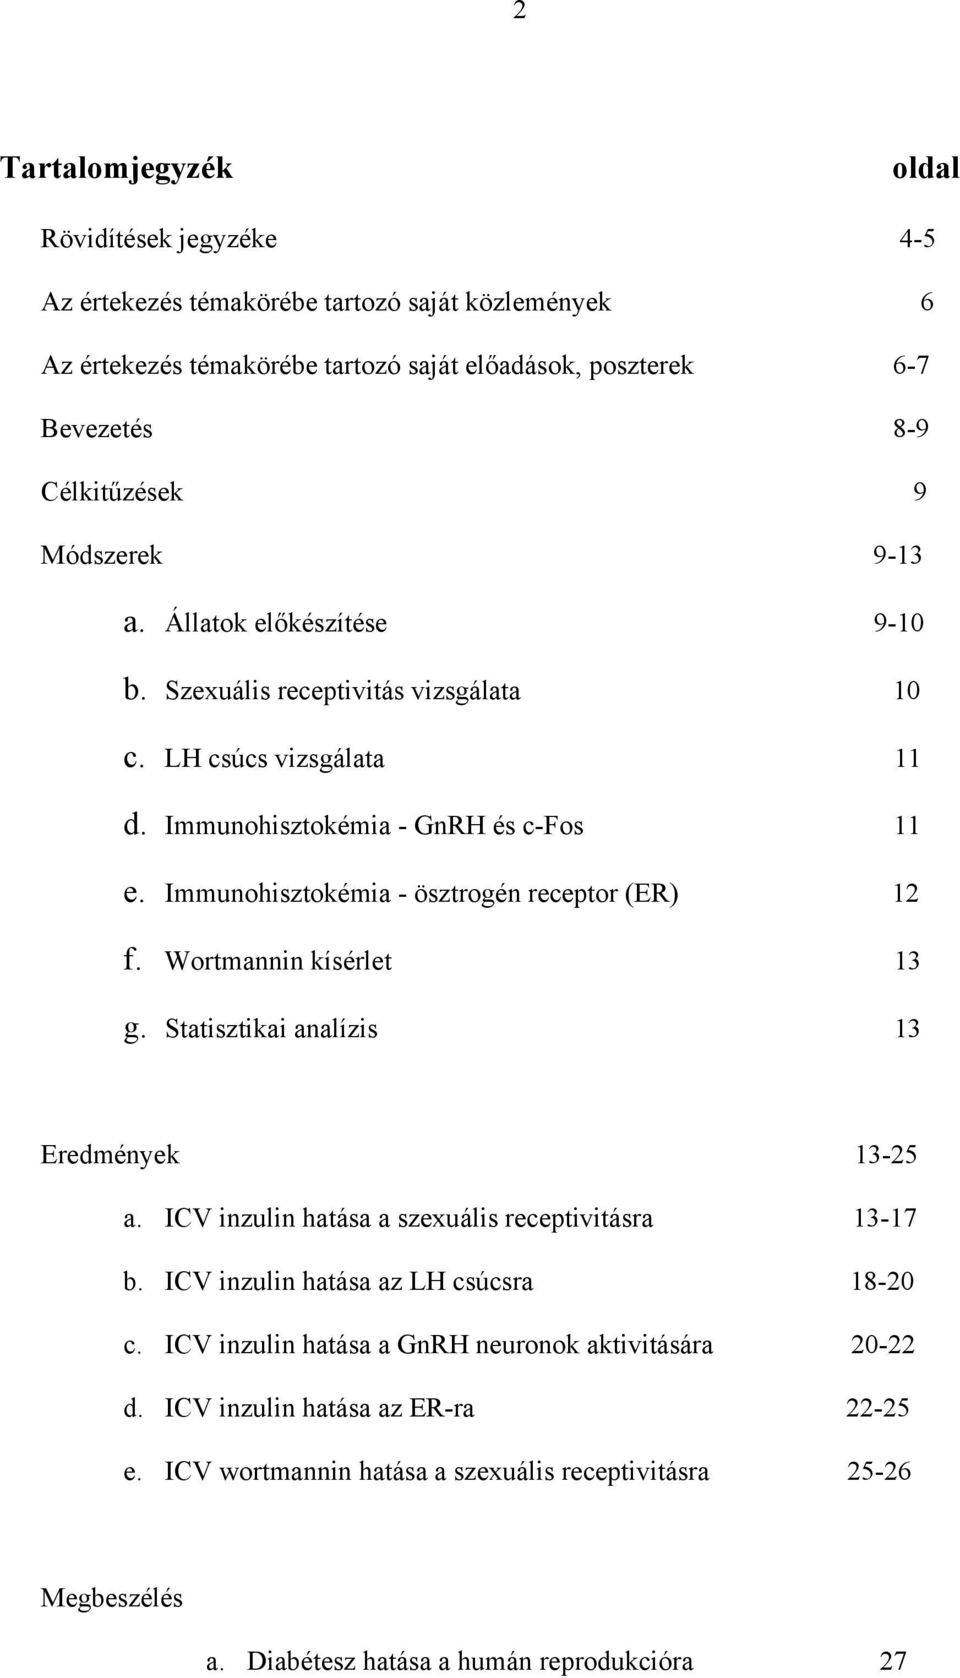 Immunohisztokémia - ösztrogén receptor (ER) 12 f. Wortmannin kísérlet 13 g. Statisztikai analízis 13 Eredmények 13-25 a. ICV inzulin hatása a szexuális receptivitásra 13-17 b.